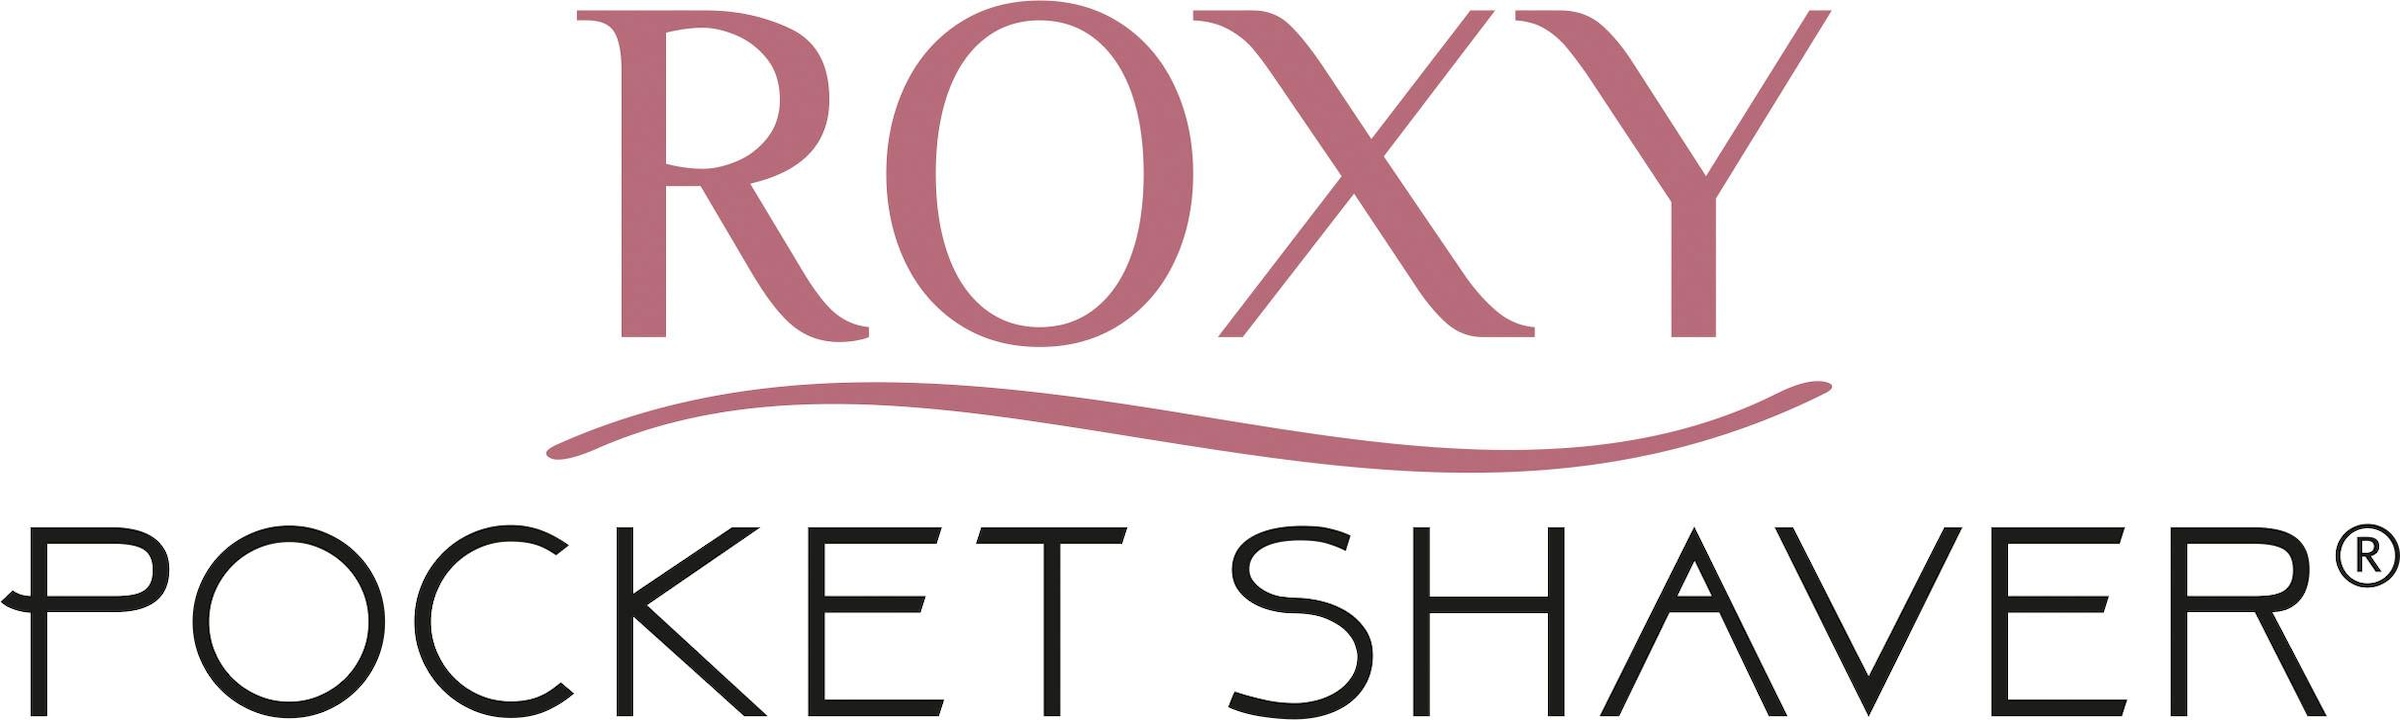 MediaShop Elektrogesichtshaarentferner 3 »Roxy 2 mit Jahren XXL Pocket St. Shaver«, Garantie Aufsätze